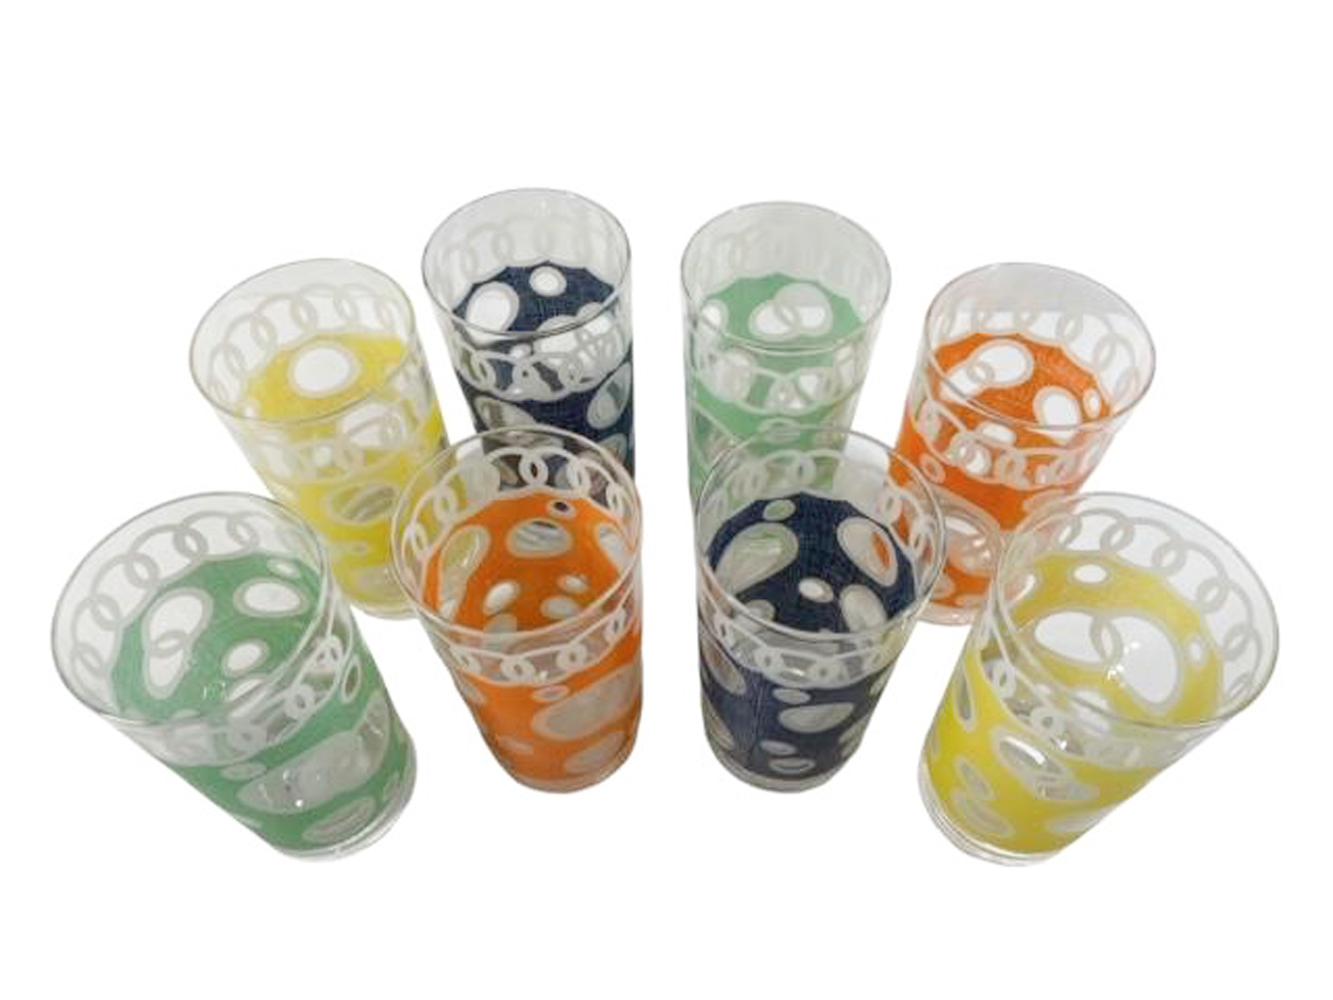 Ensemble de huit verres highball conçus par Fred Press, comprenant deux verres de chaque couleur, avec des cercles transparents à bordures blanches sur un fond coloré avec une texture tissée en dessous d'une bande d'anneaux blancs reliés entre eux.